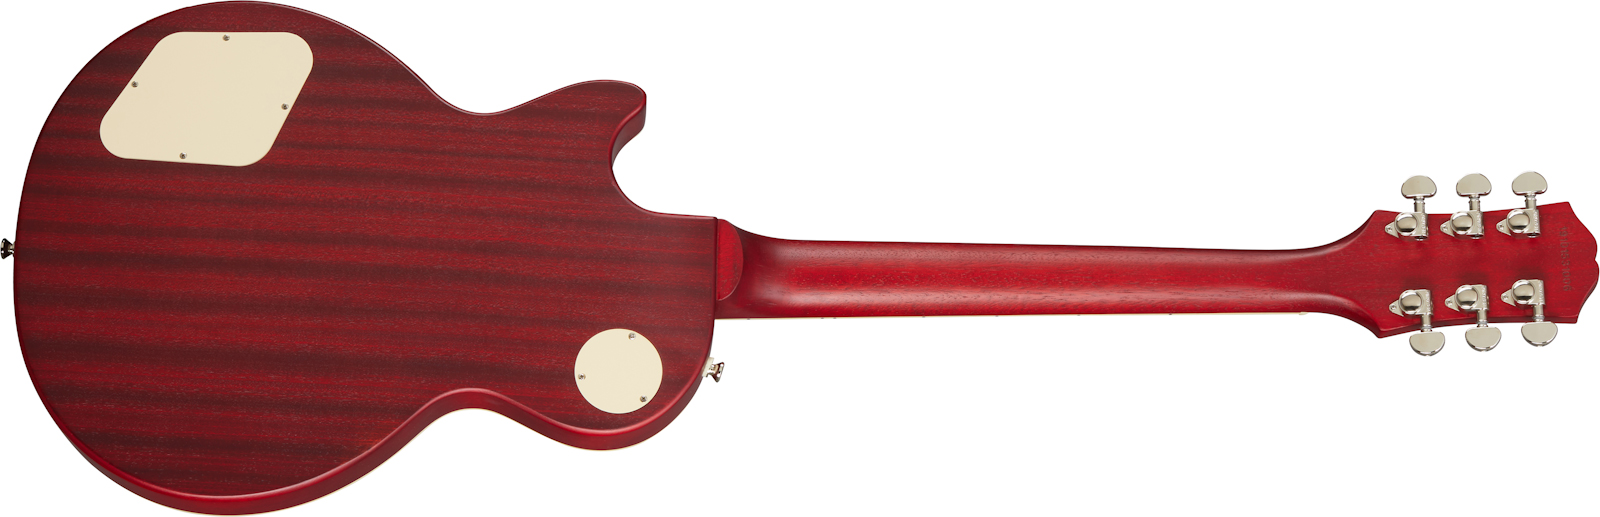 Epiphone Les Paul Classic Worn 2020 Hh Ht Rw - Worn Heritage Cherry Sunburst - Guitarra eléctrica de corte único. - Variation 1